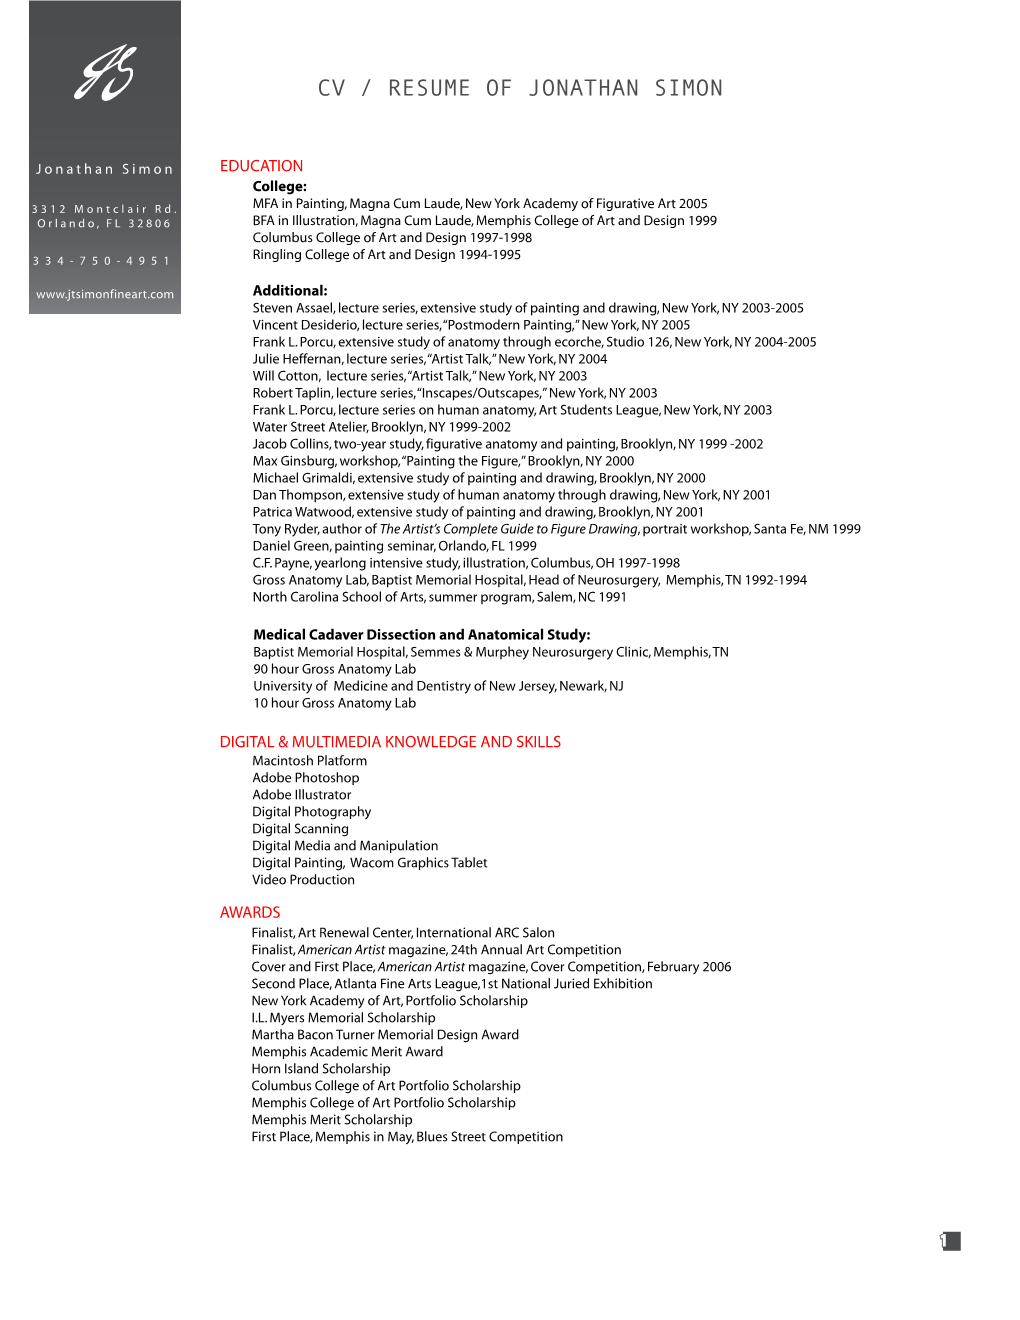 Download Jonathan Simon's Resume (PDF)